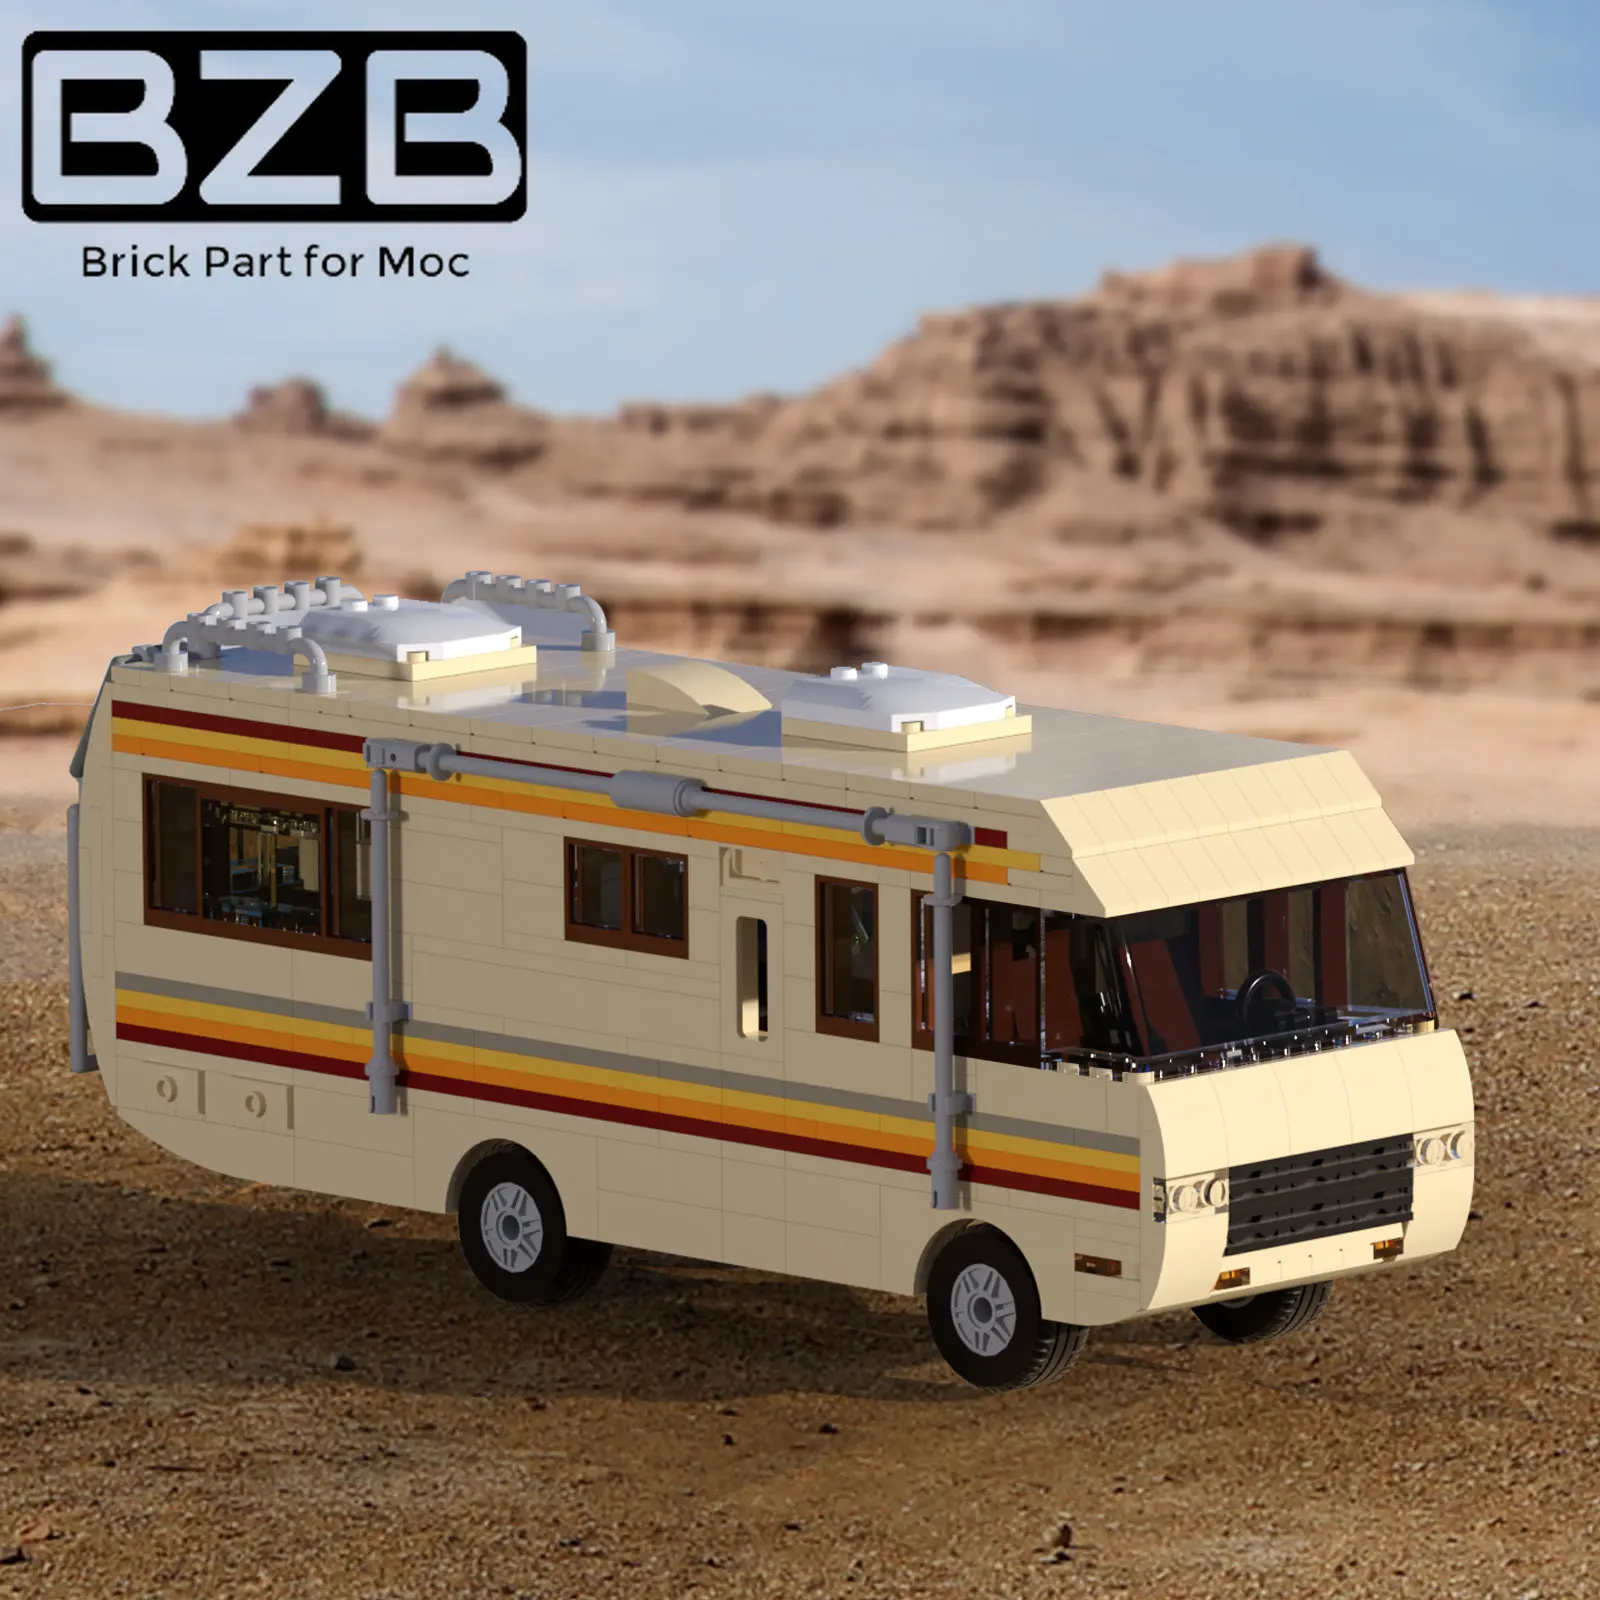 BZB MOC Moive Breaking Bad Van Vehicle Building Blocks Set Walter White Pinkman Cooking Lab RV Car bricks Toys Kids best Gifts